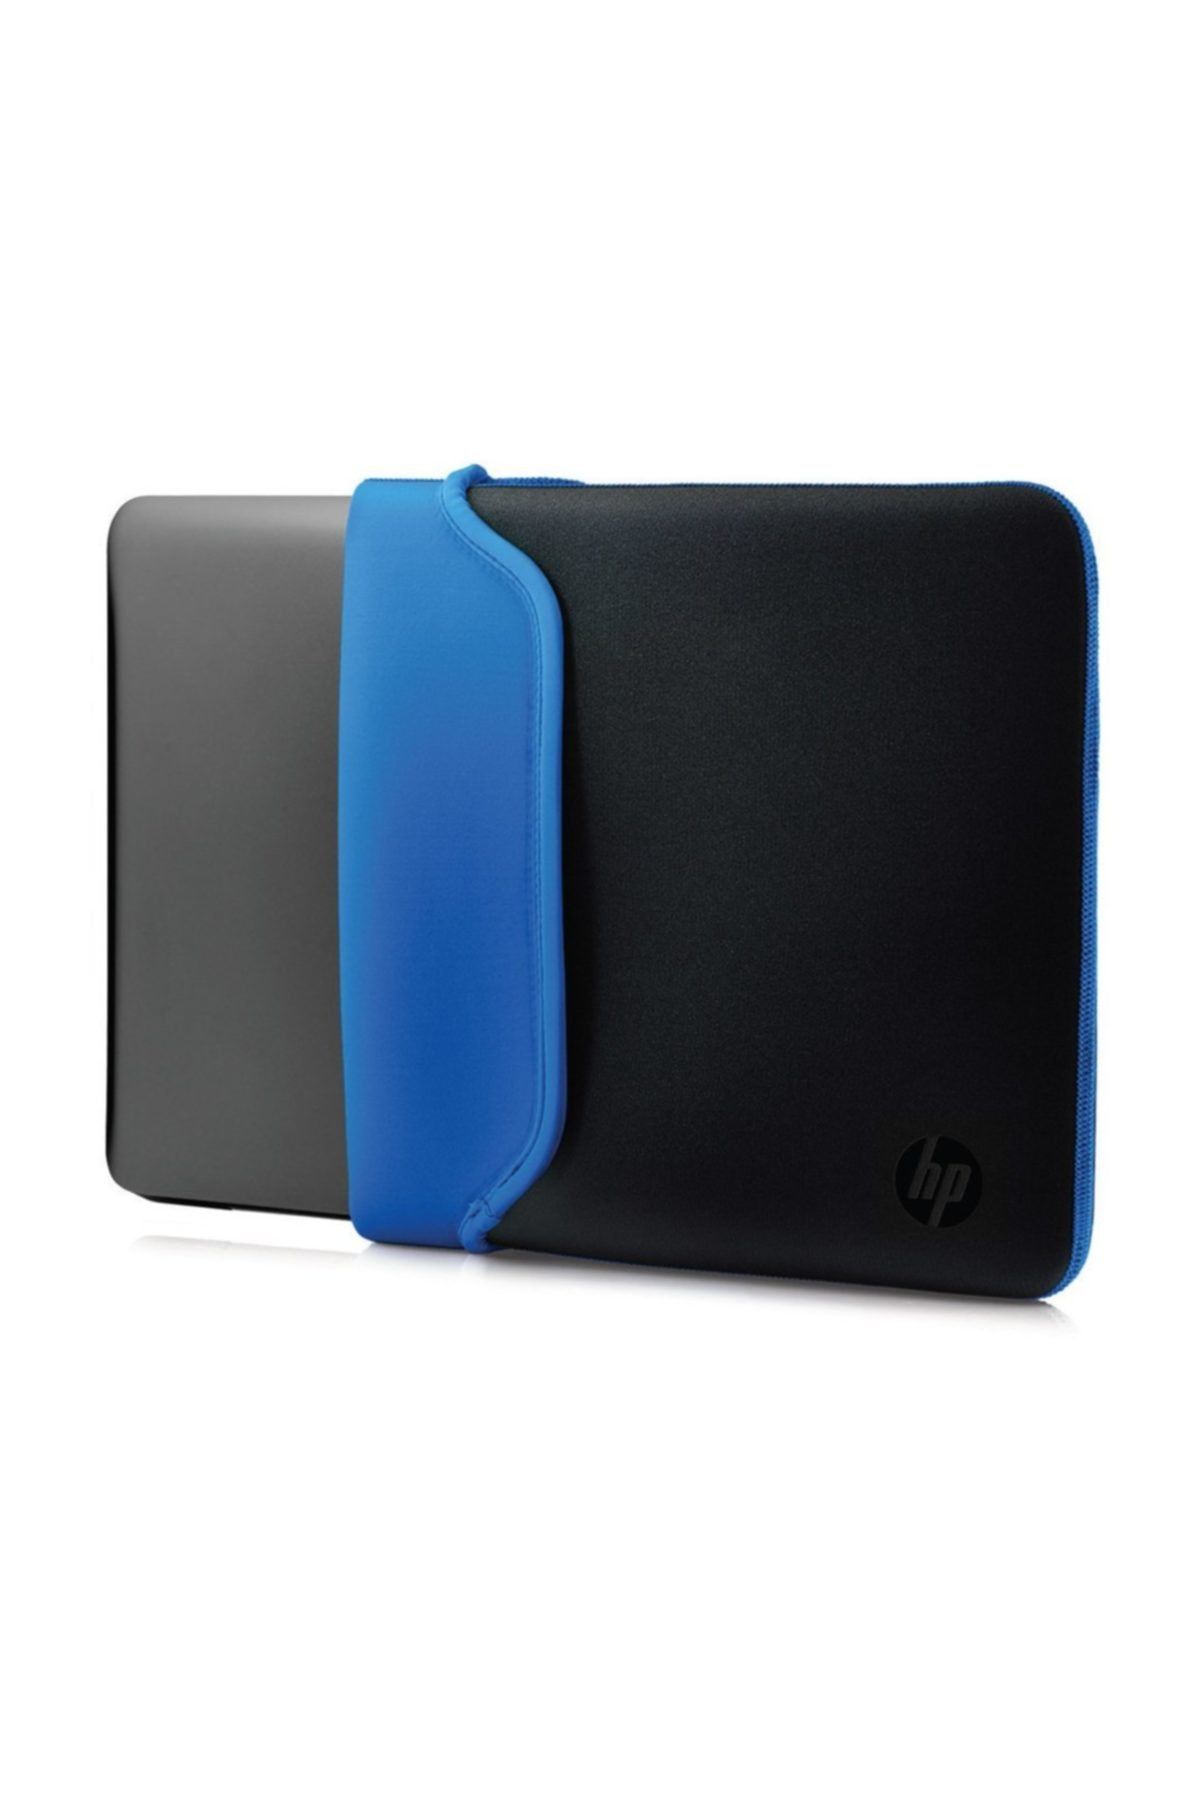 HP V5c31aa 15.6 Neopren Çevrilebilir Notebook Kılıf Siyah/mavi